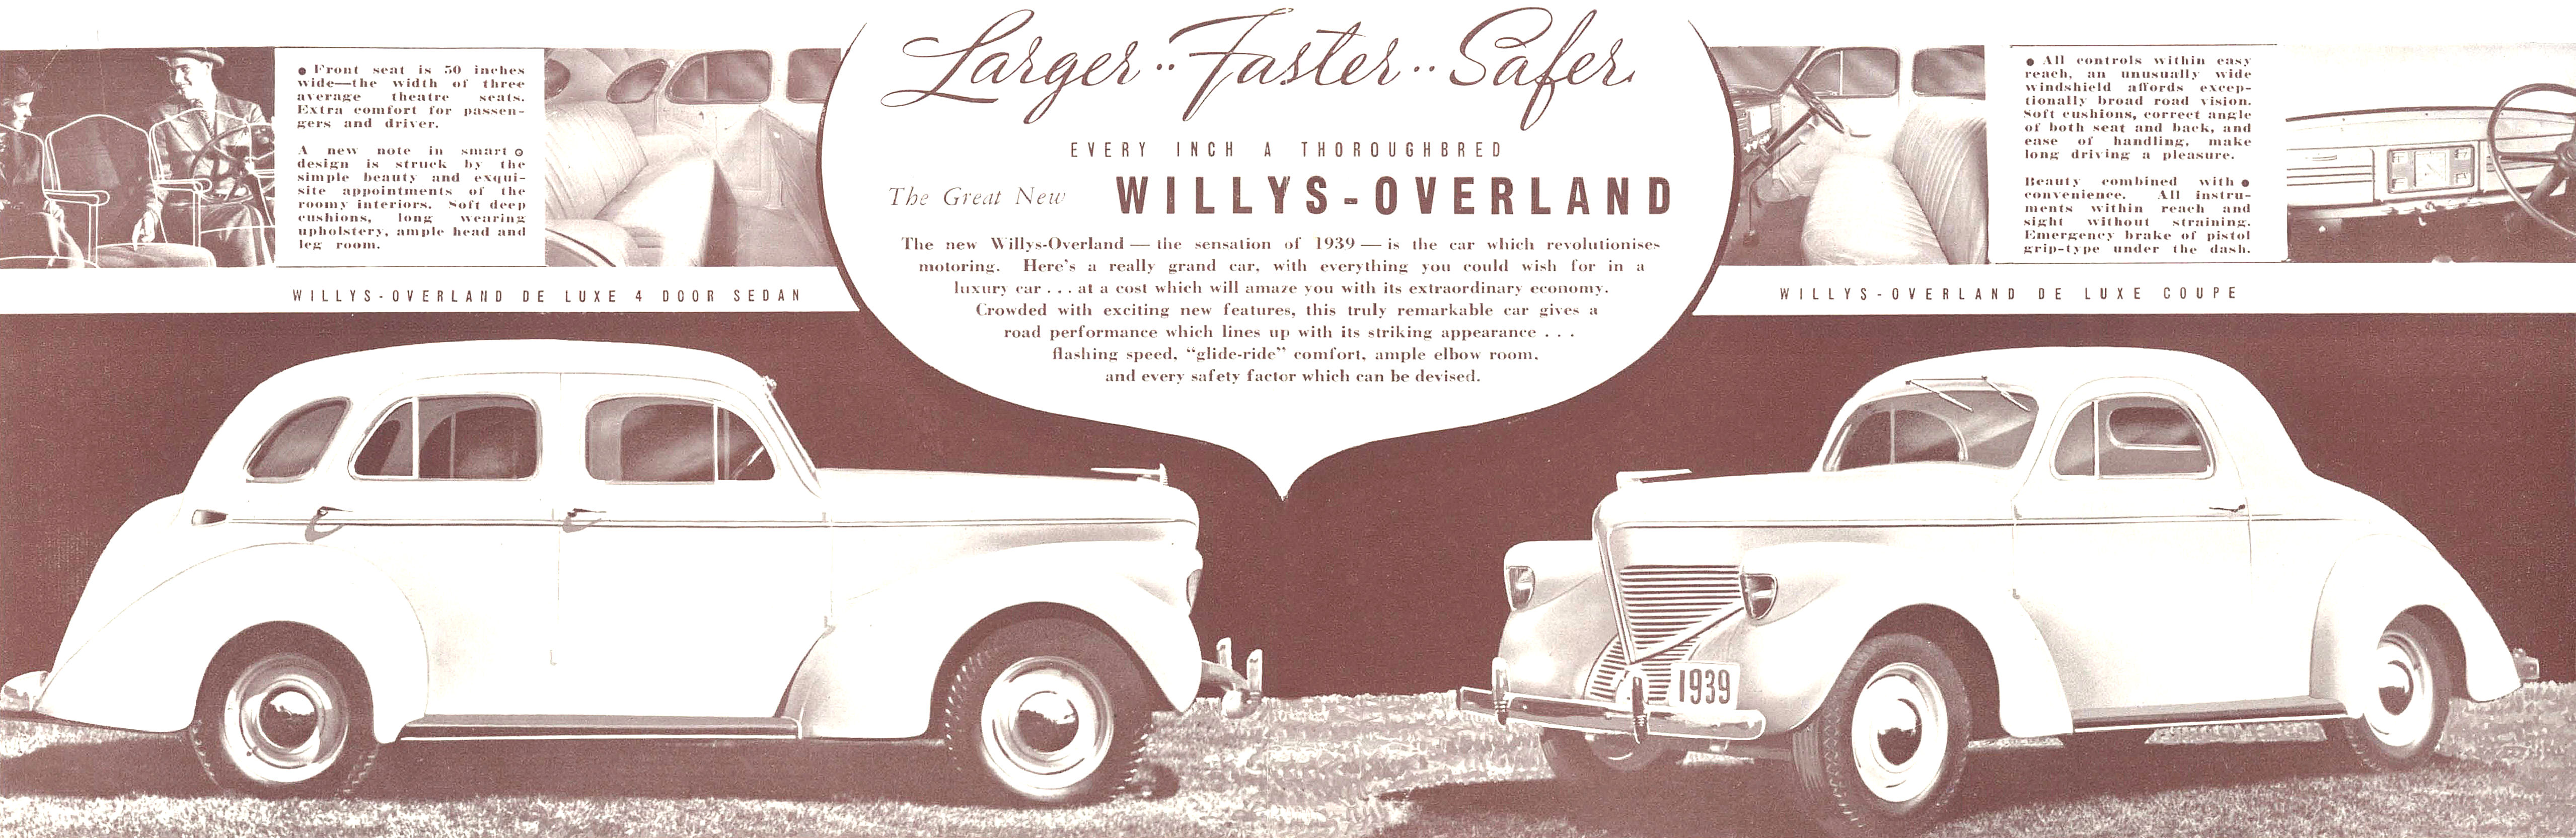 1939_Willys-Overland_Folder_Aus-02-03